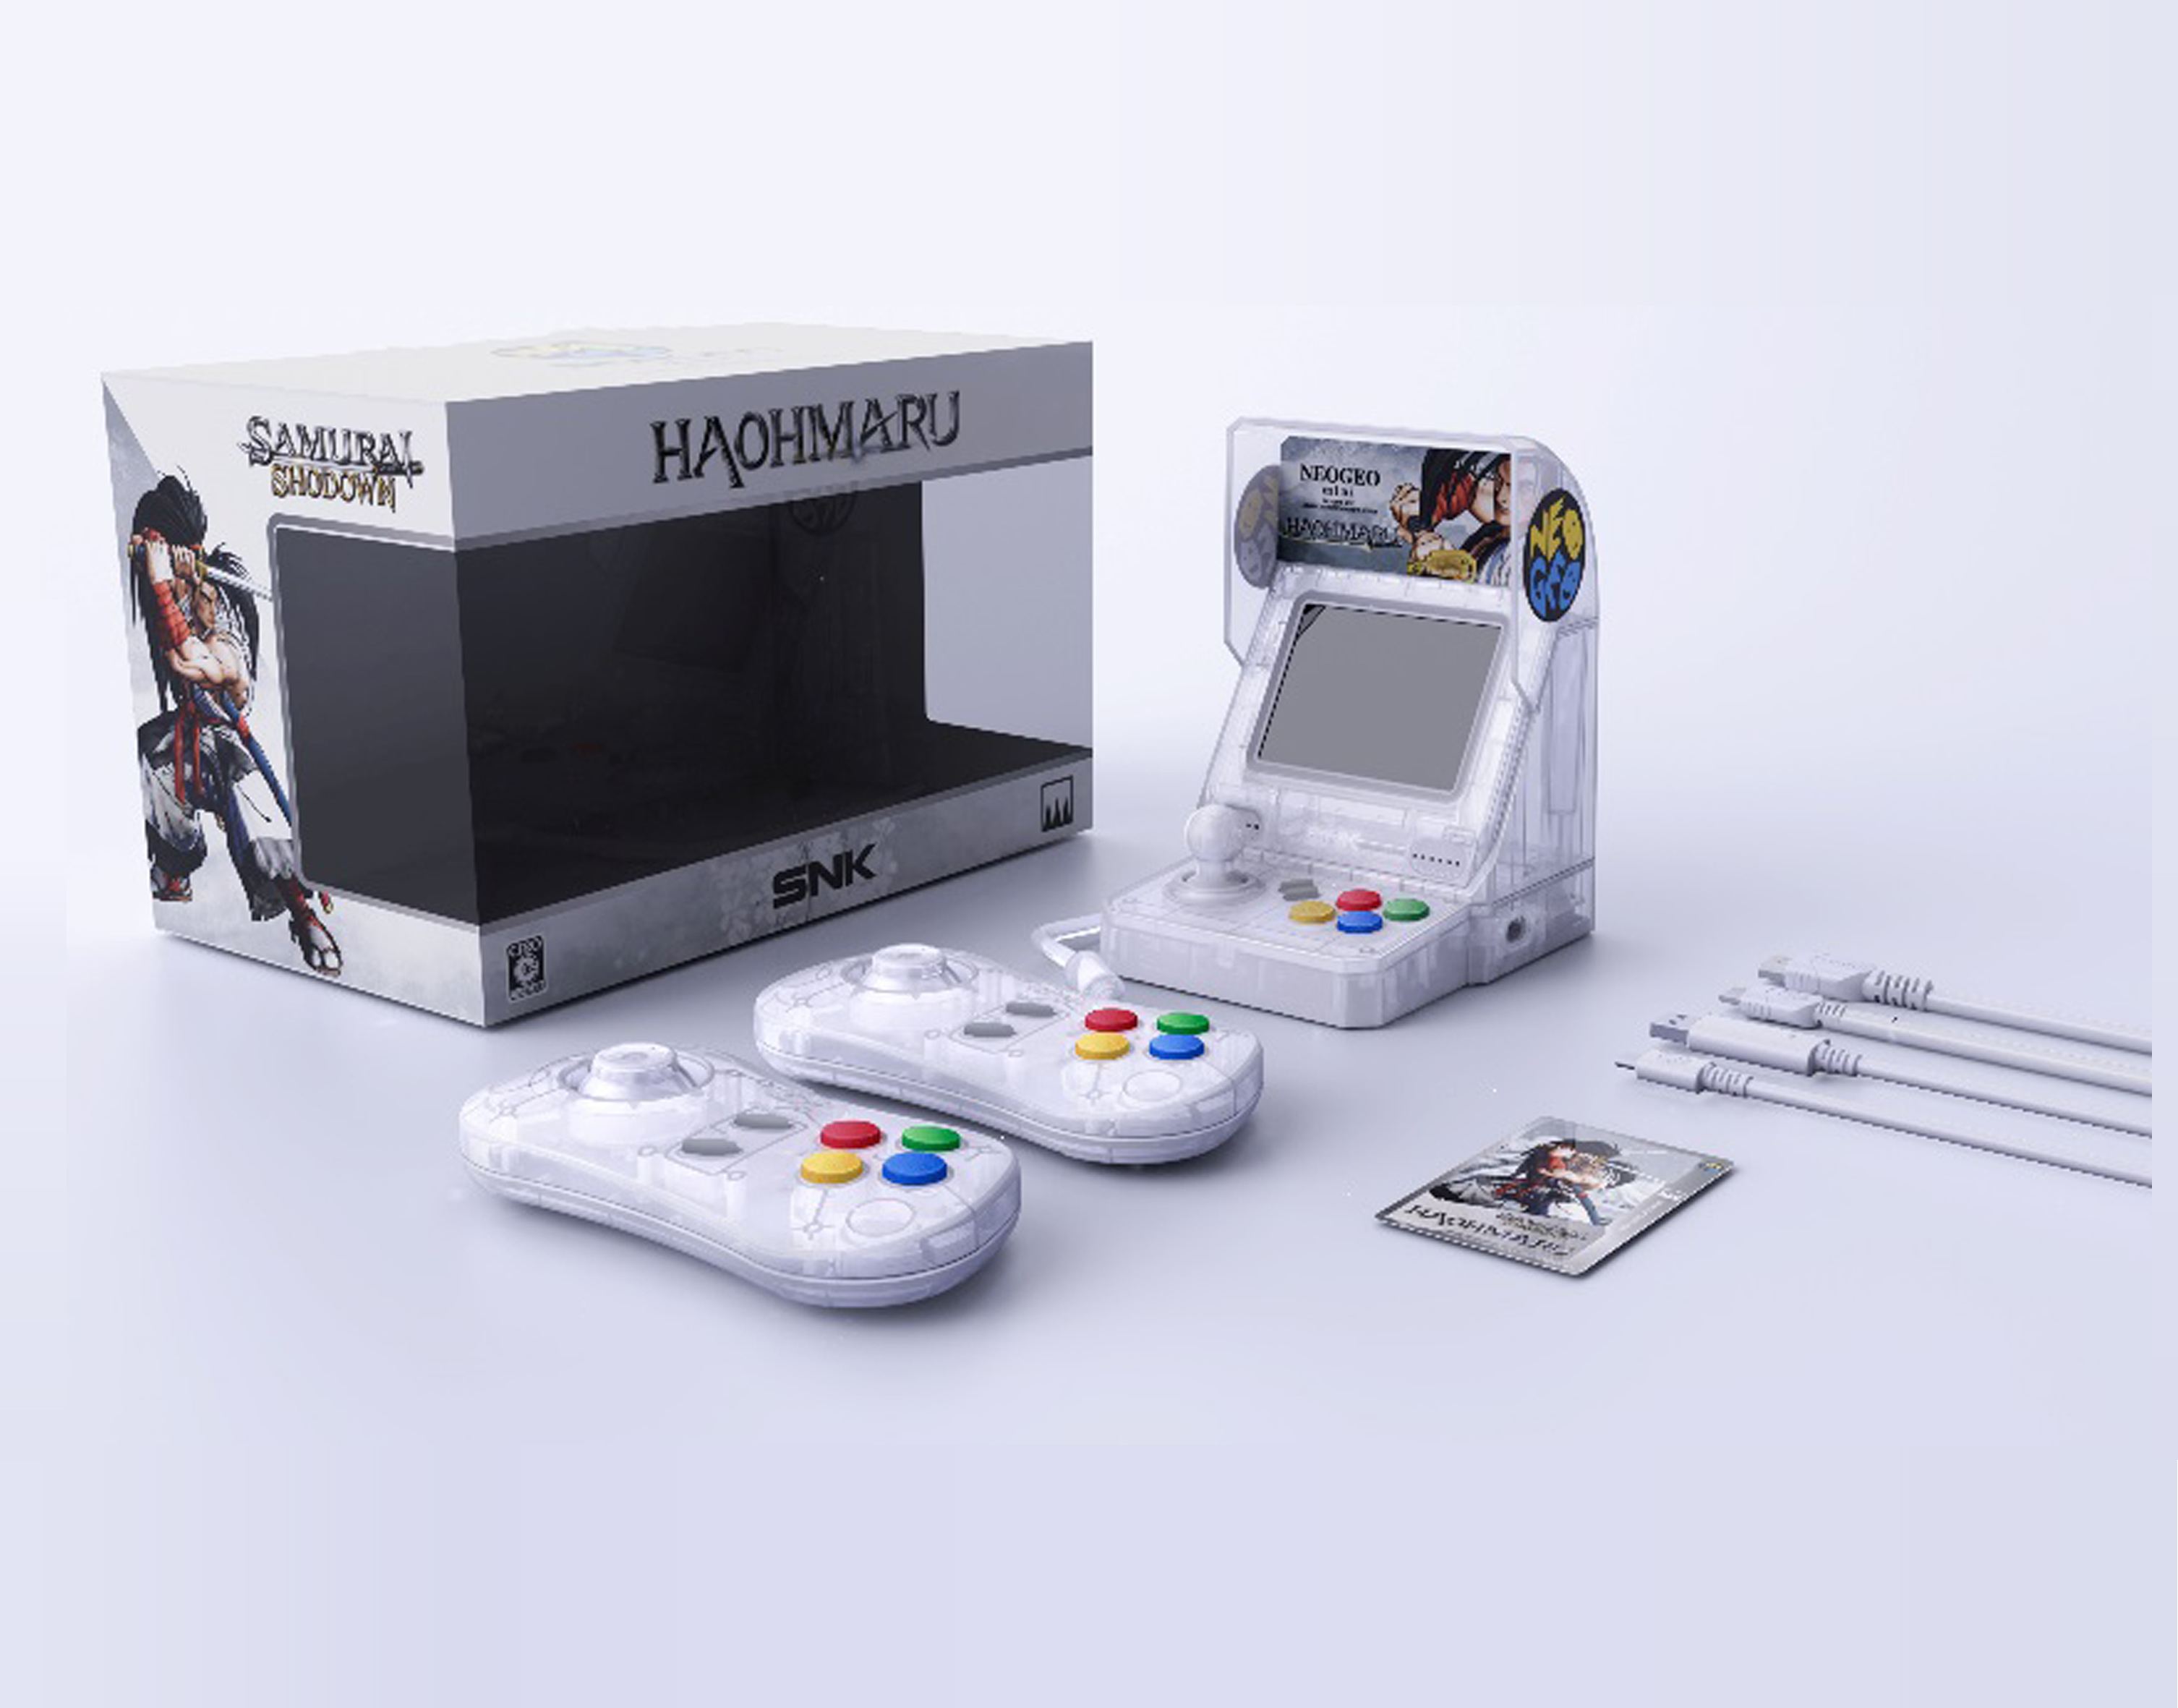 SNK Mini Video Game Consola Neo Geo Pocket - Classics Edition